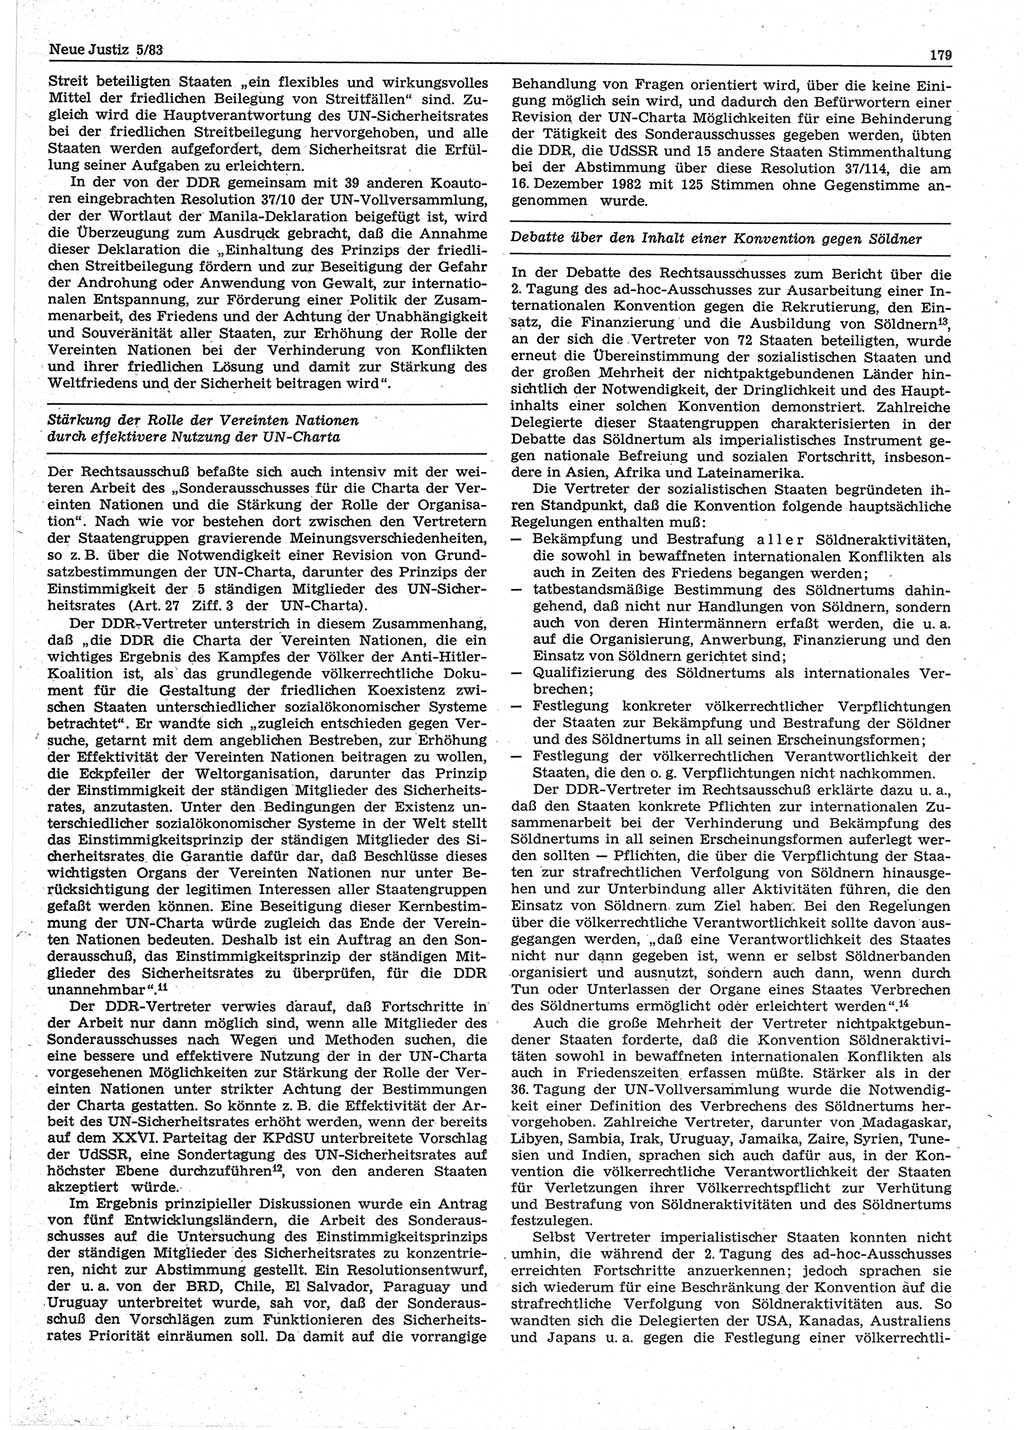 Neue Justiz (NJ), Zeitschrift für sozialistisches Recht und Gesetzlichkeit [Deutsche Demokratische Republik (DDR)], 37. Jahrgang 1983, Seite 179 (NJ DDR 1983, S. 179)